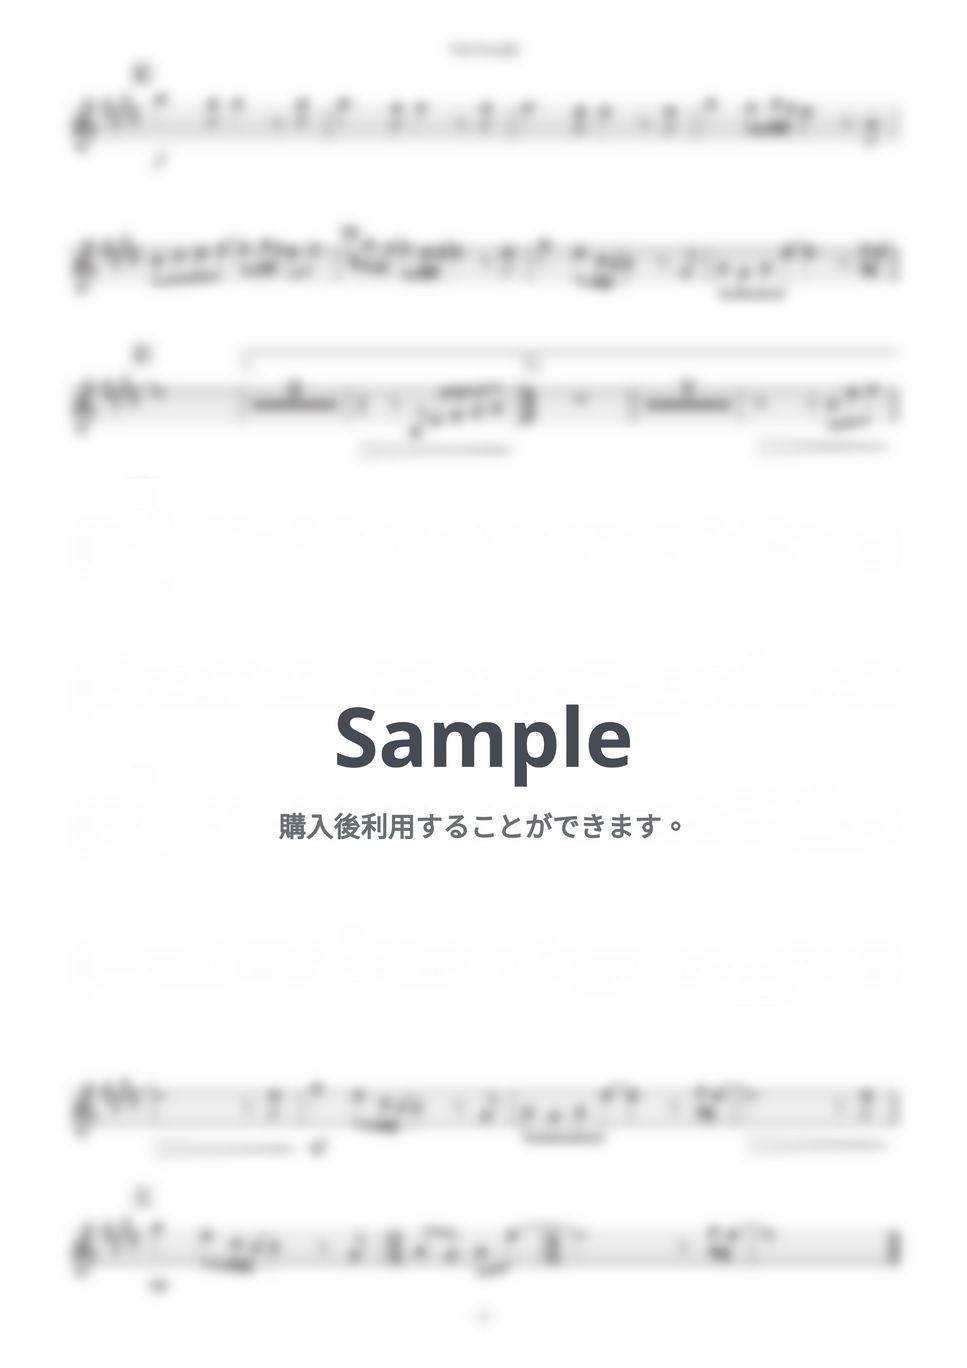 サザンオールスターズ - TSUNAMI (B♭) by Kaname@Popstudio